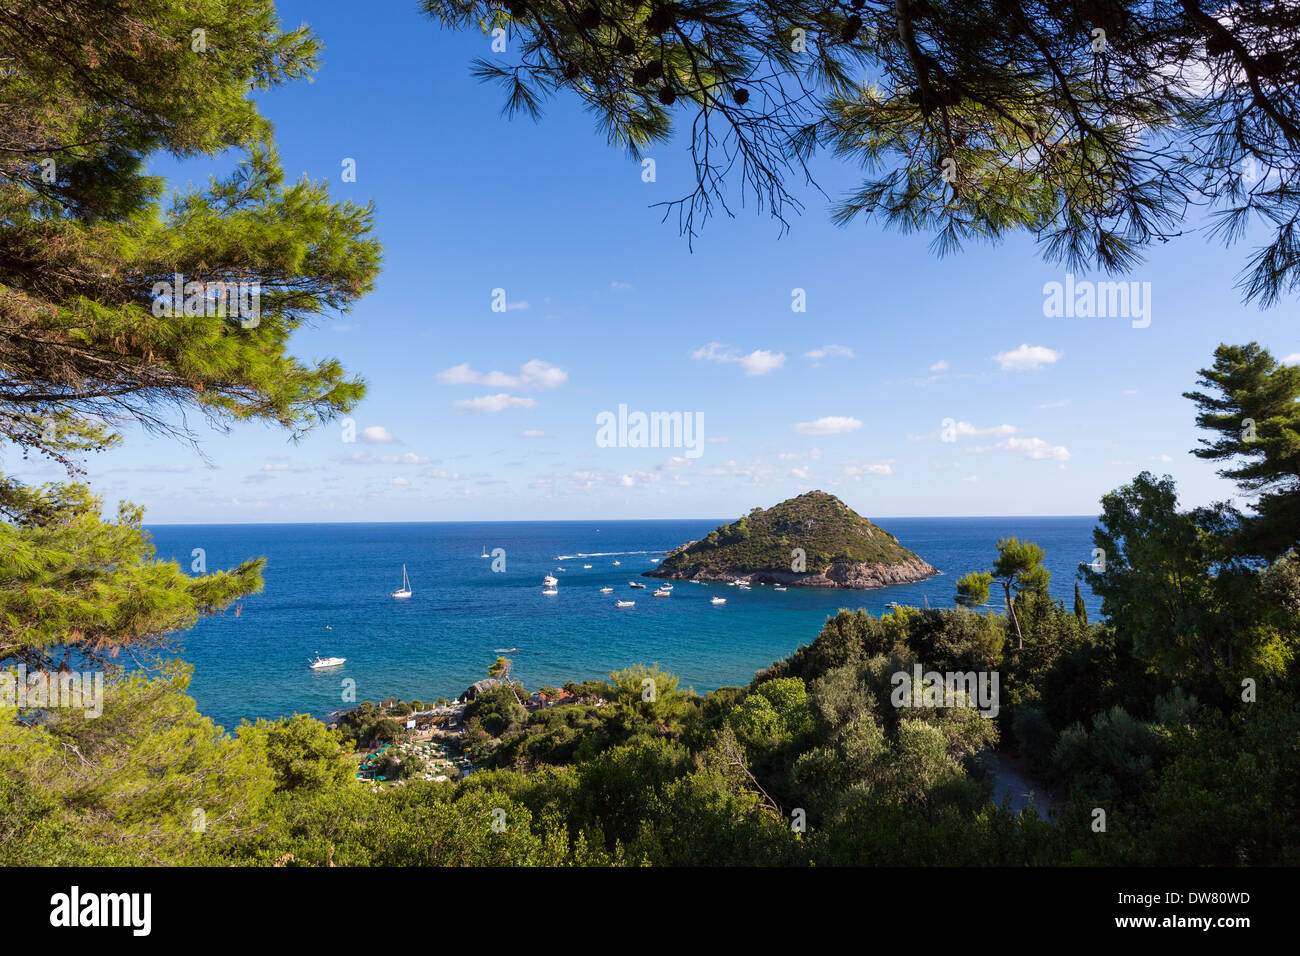 A view the Isolotto (a small island) near the coast near Porto Ercole, located in the Monte Argentario, Tuscany Stock Photo